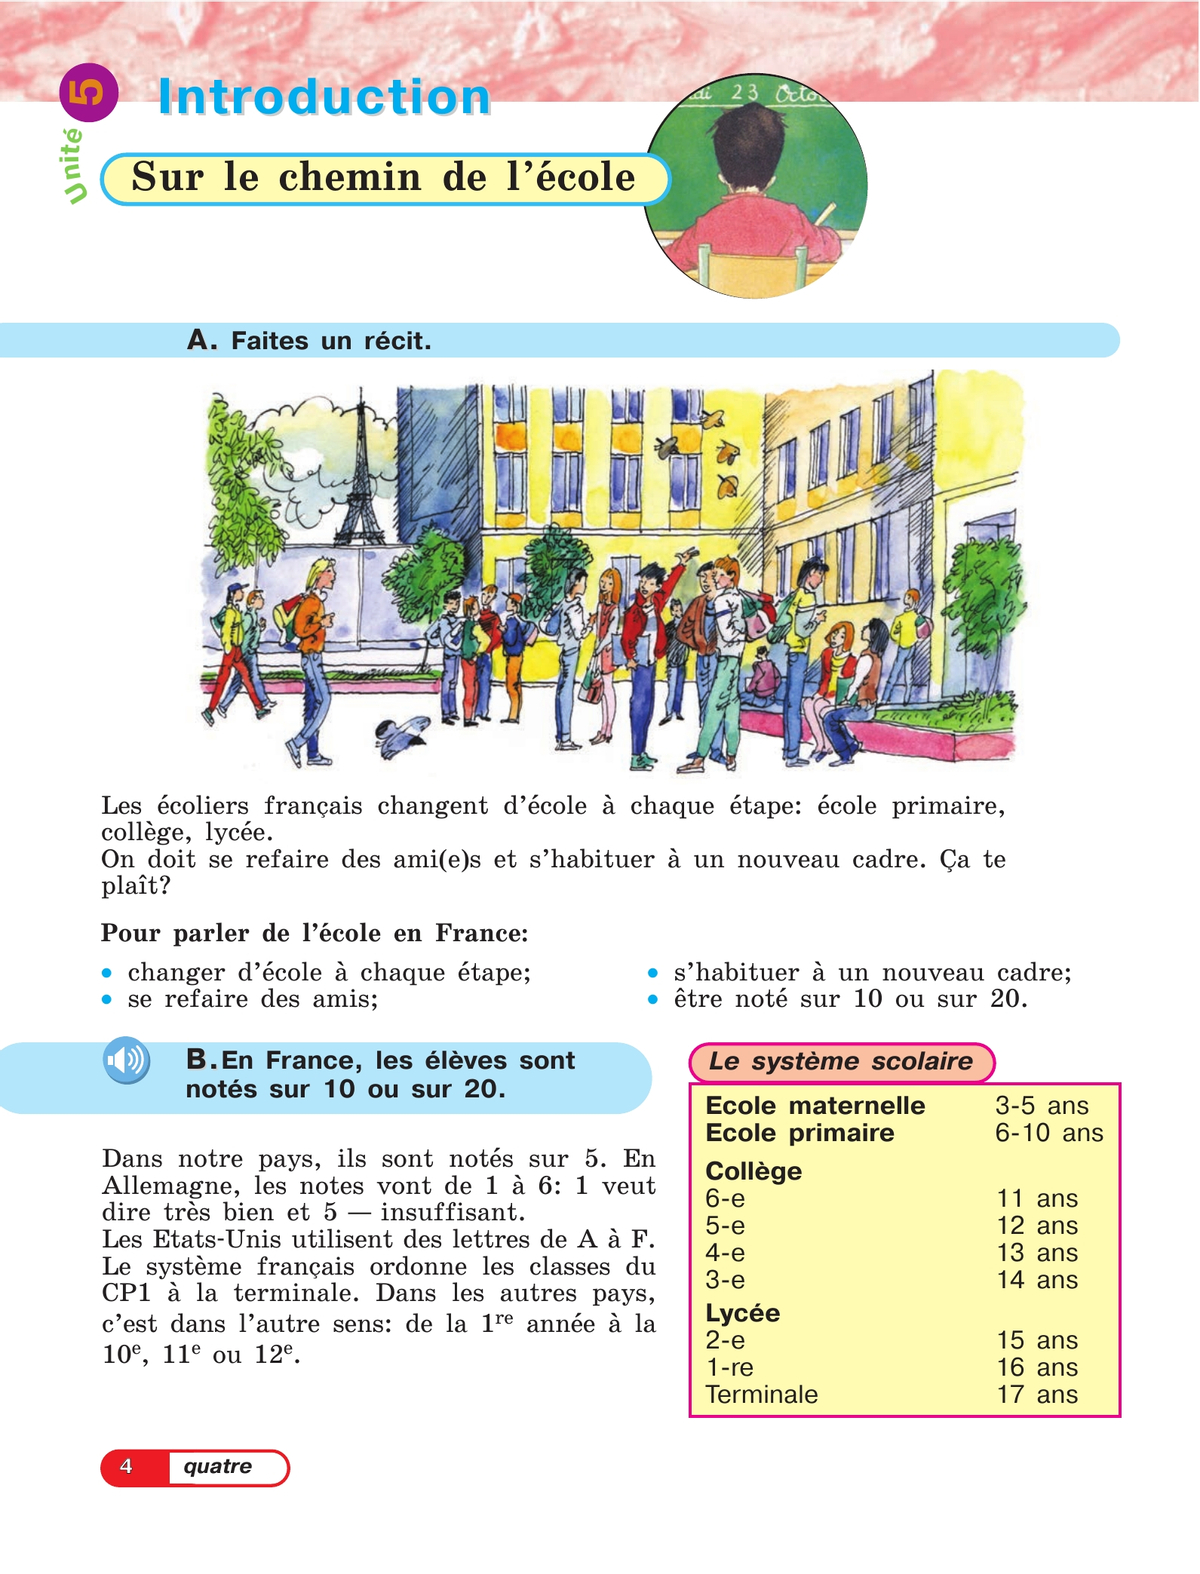 Французский язык. 5 класс. Углублённый уровень. Учебник. В 2 ч. Часть 2. 8